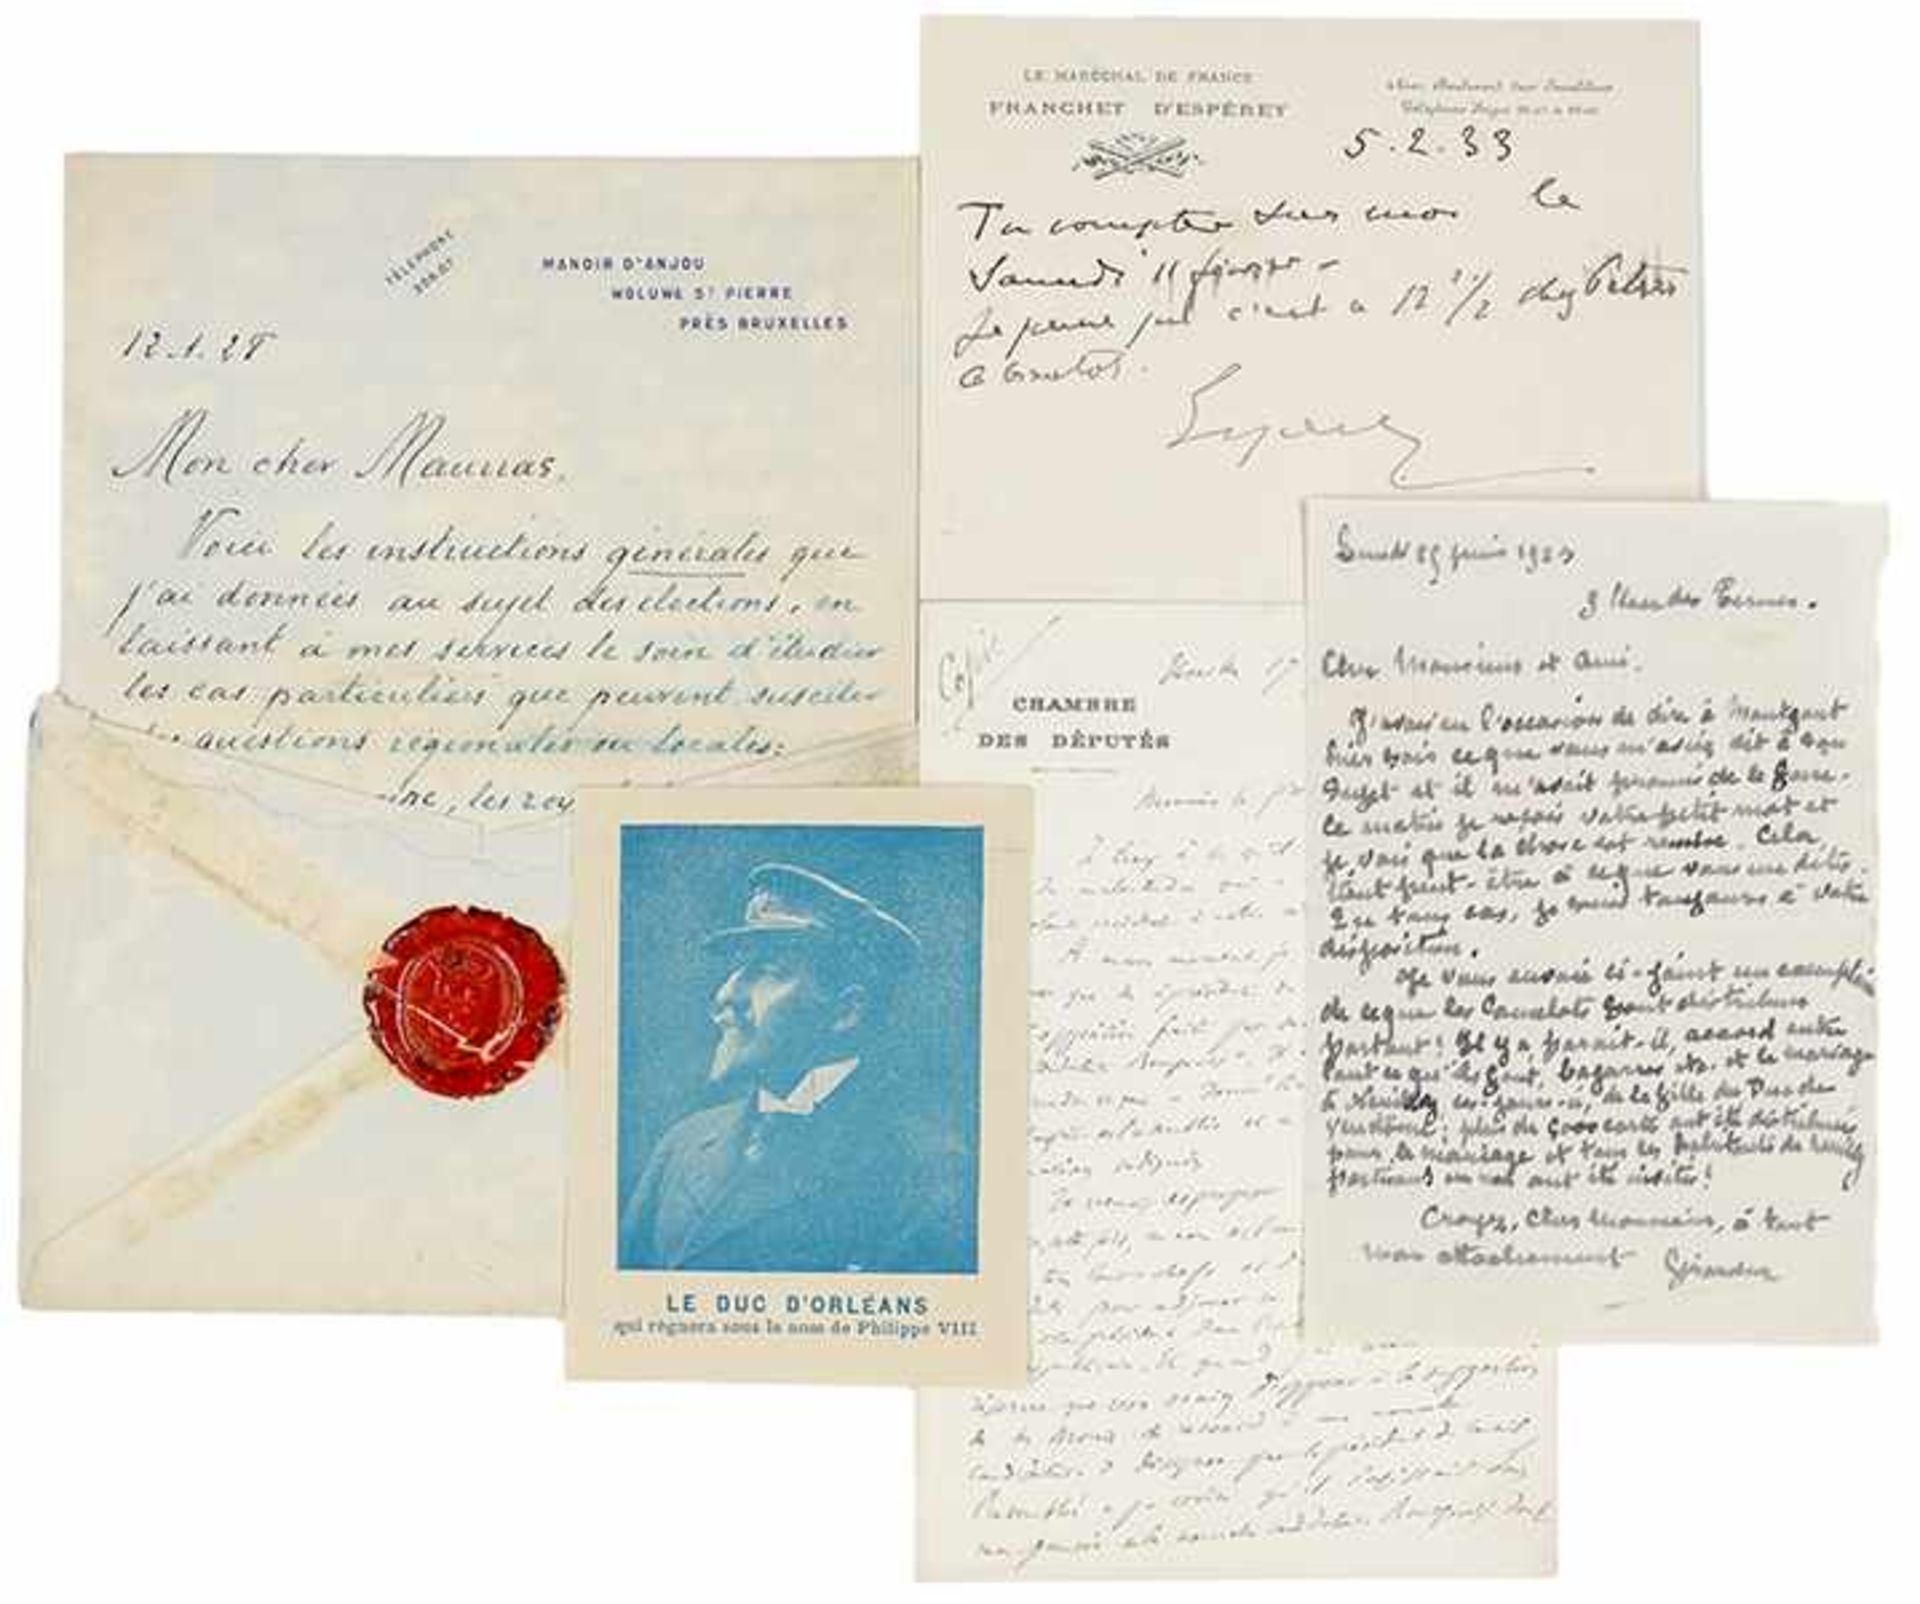 Sammlung von 4 französischen signierten Autographen zwischen 1913 und 1933. Handschriften auf